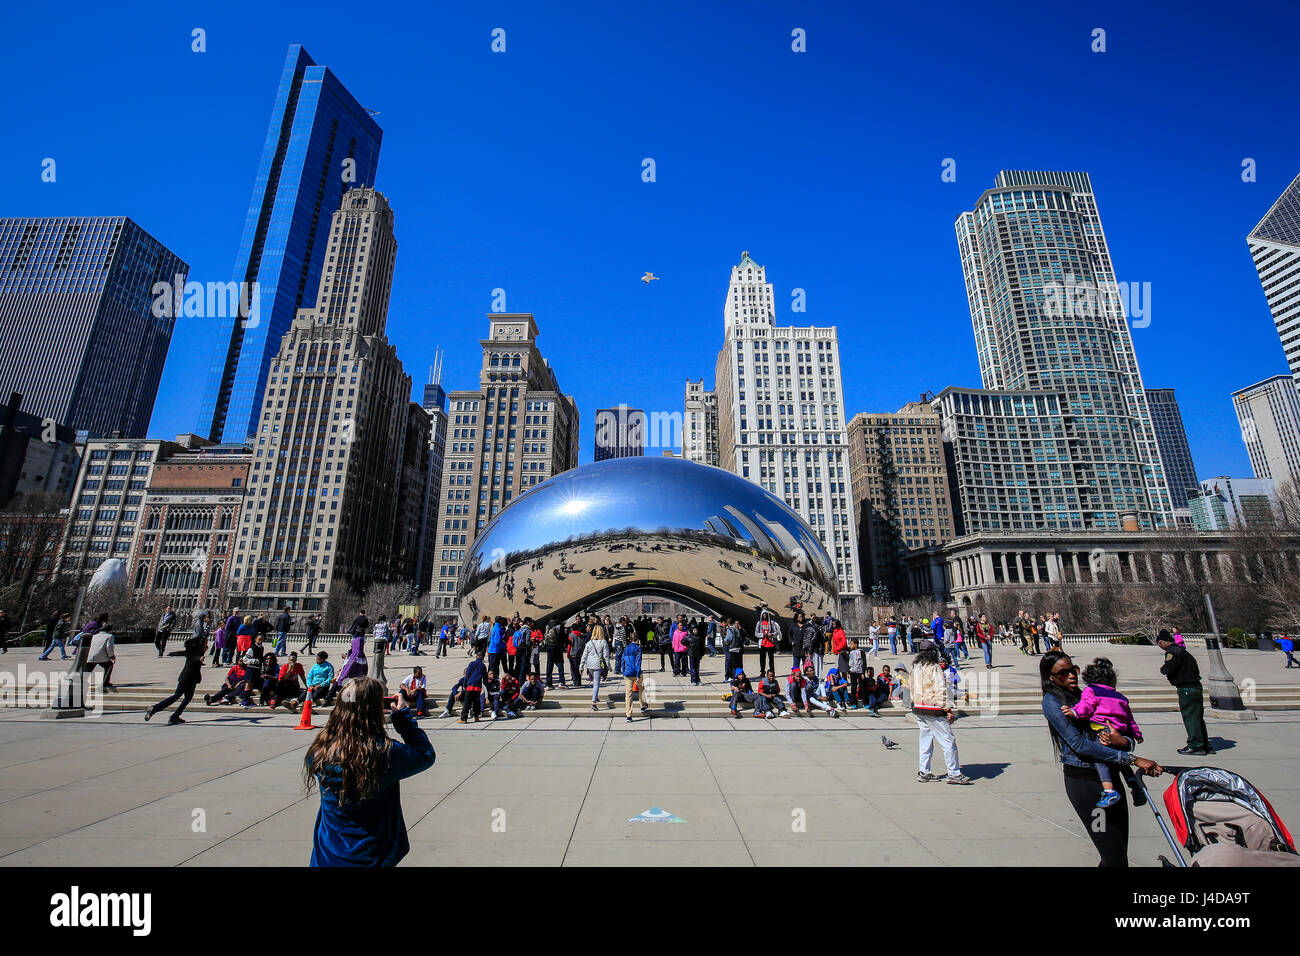 Les touristes visitent la sculpture Cloud Gate, le haricot, le Millennium Park, sur les toits de la ville, Chicago, Illinois, USA, Amérique, die Touristen besichtigen Sku Banque D'Images